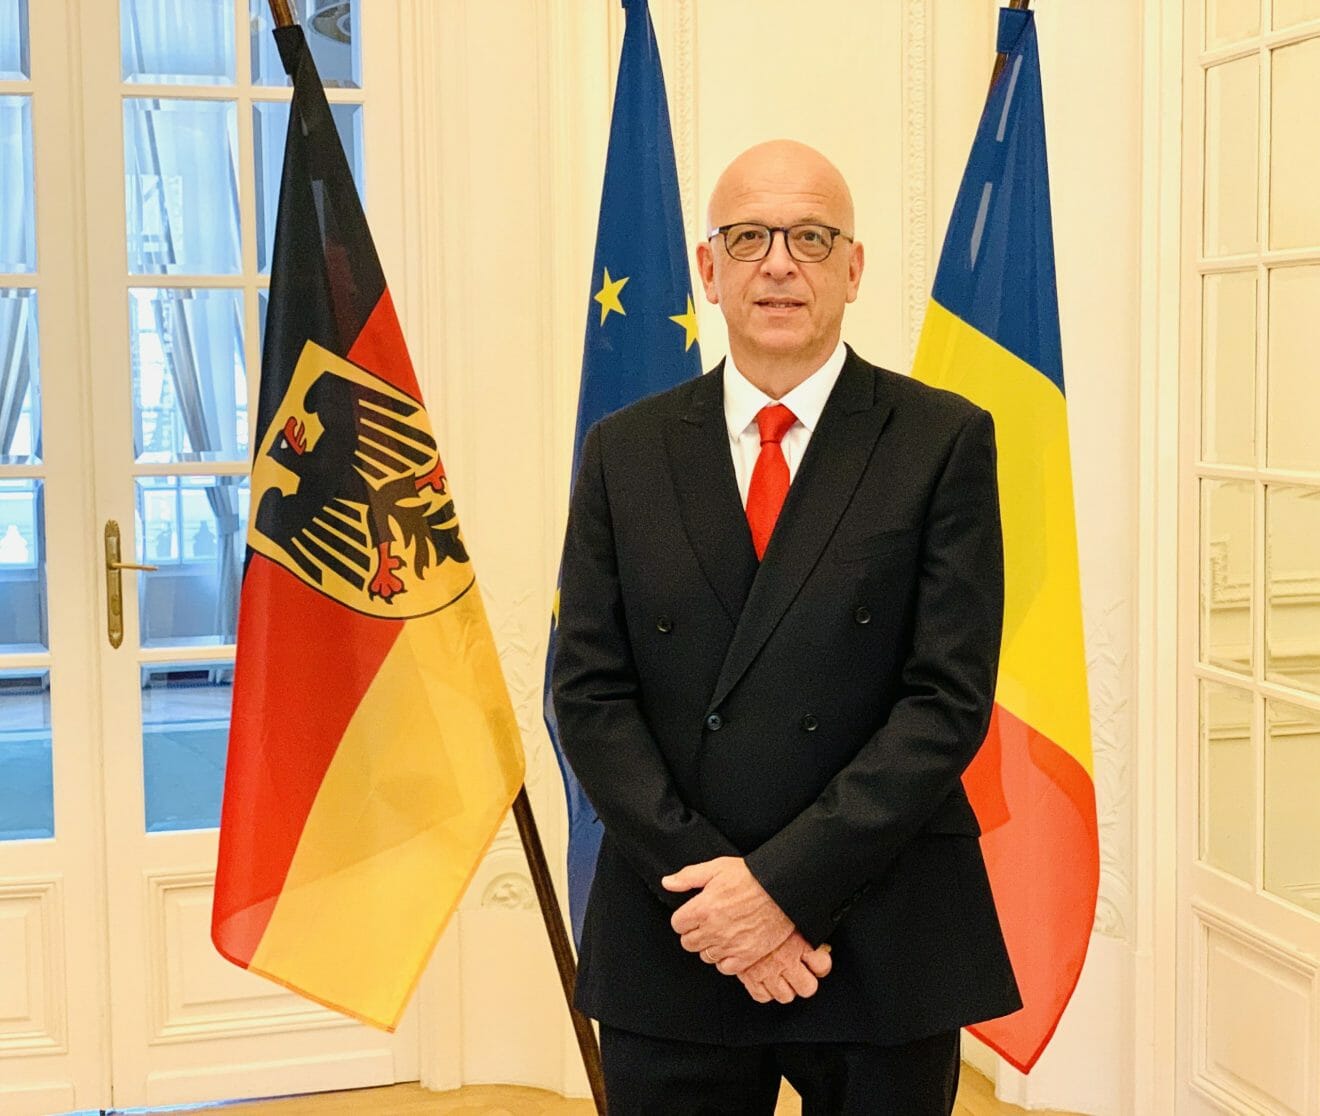 Ambasadorul Germaniei: ”Românii au fost foarte deştepţi în ultimii ani”